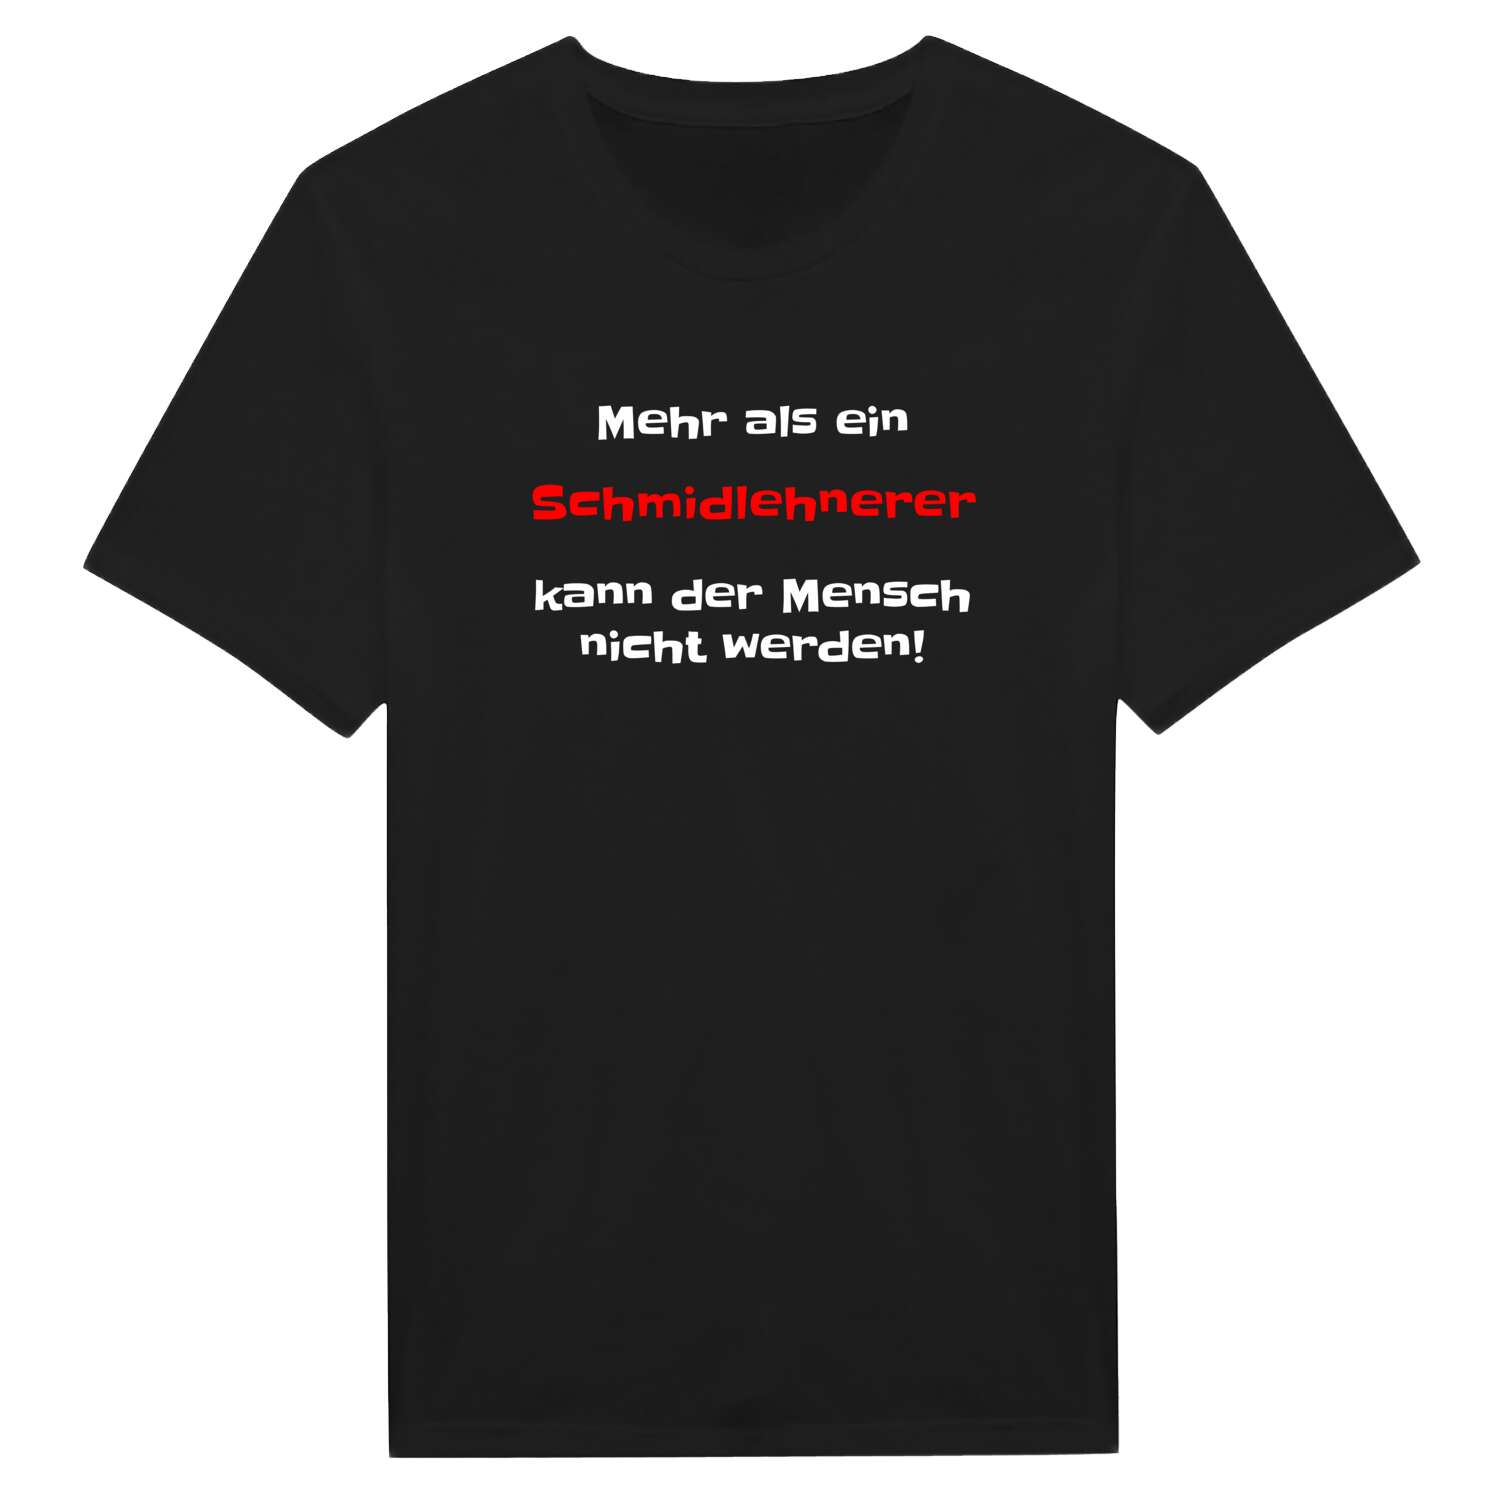 Schmidlehner T-Shirt »Mehr als ein«